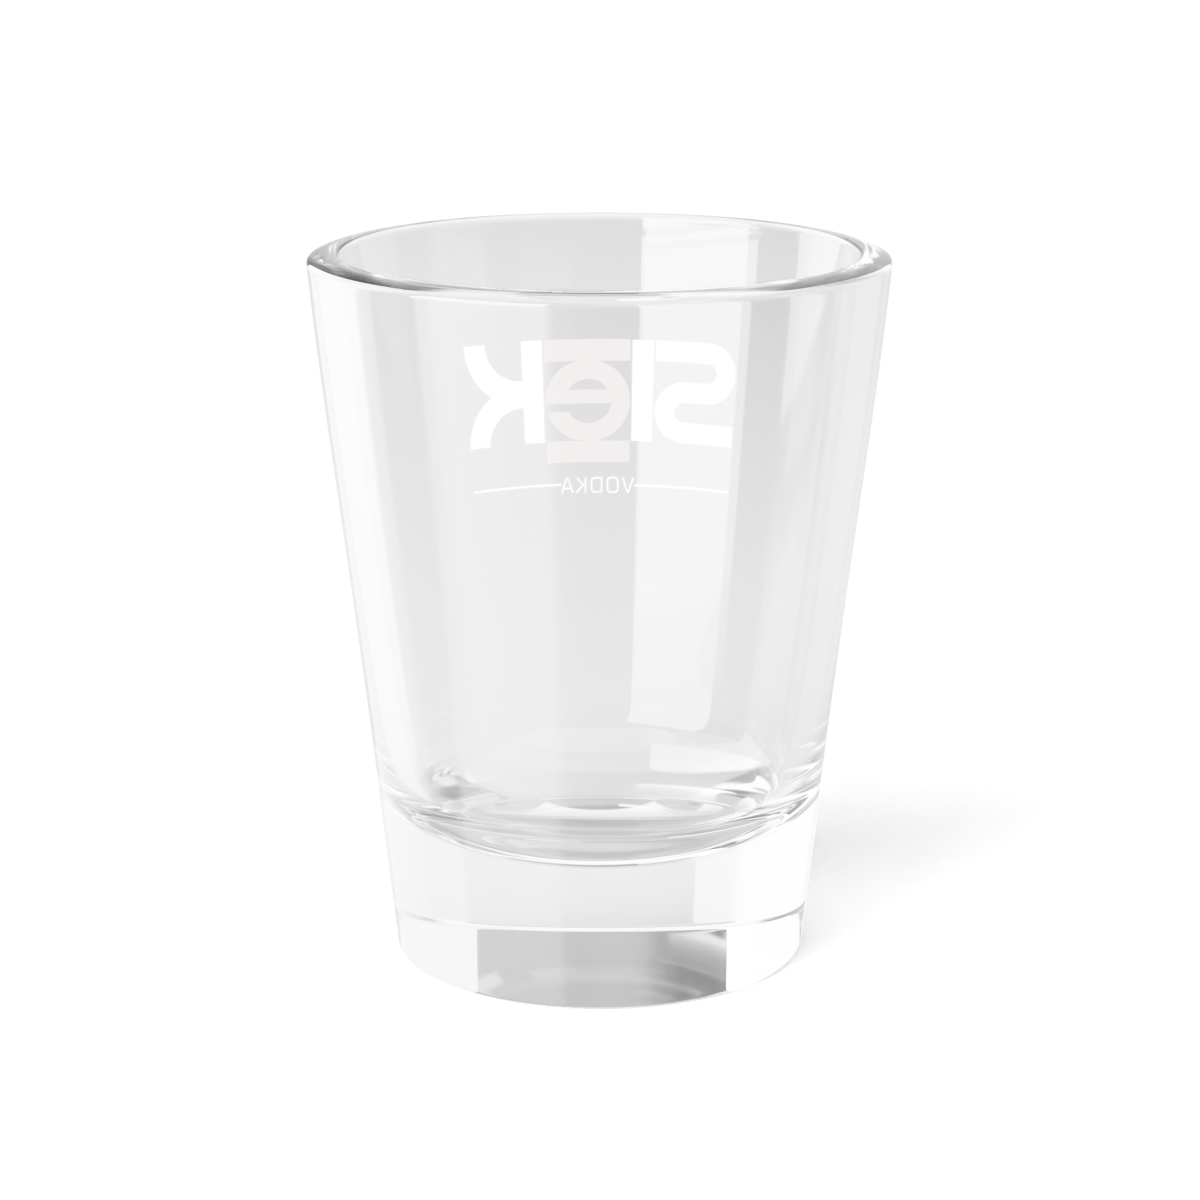  Slēk Vodka Shot Glass, 1.5oz product thumbnail image